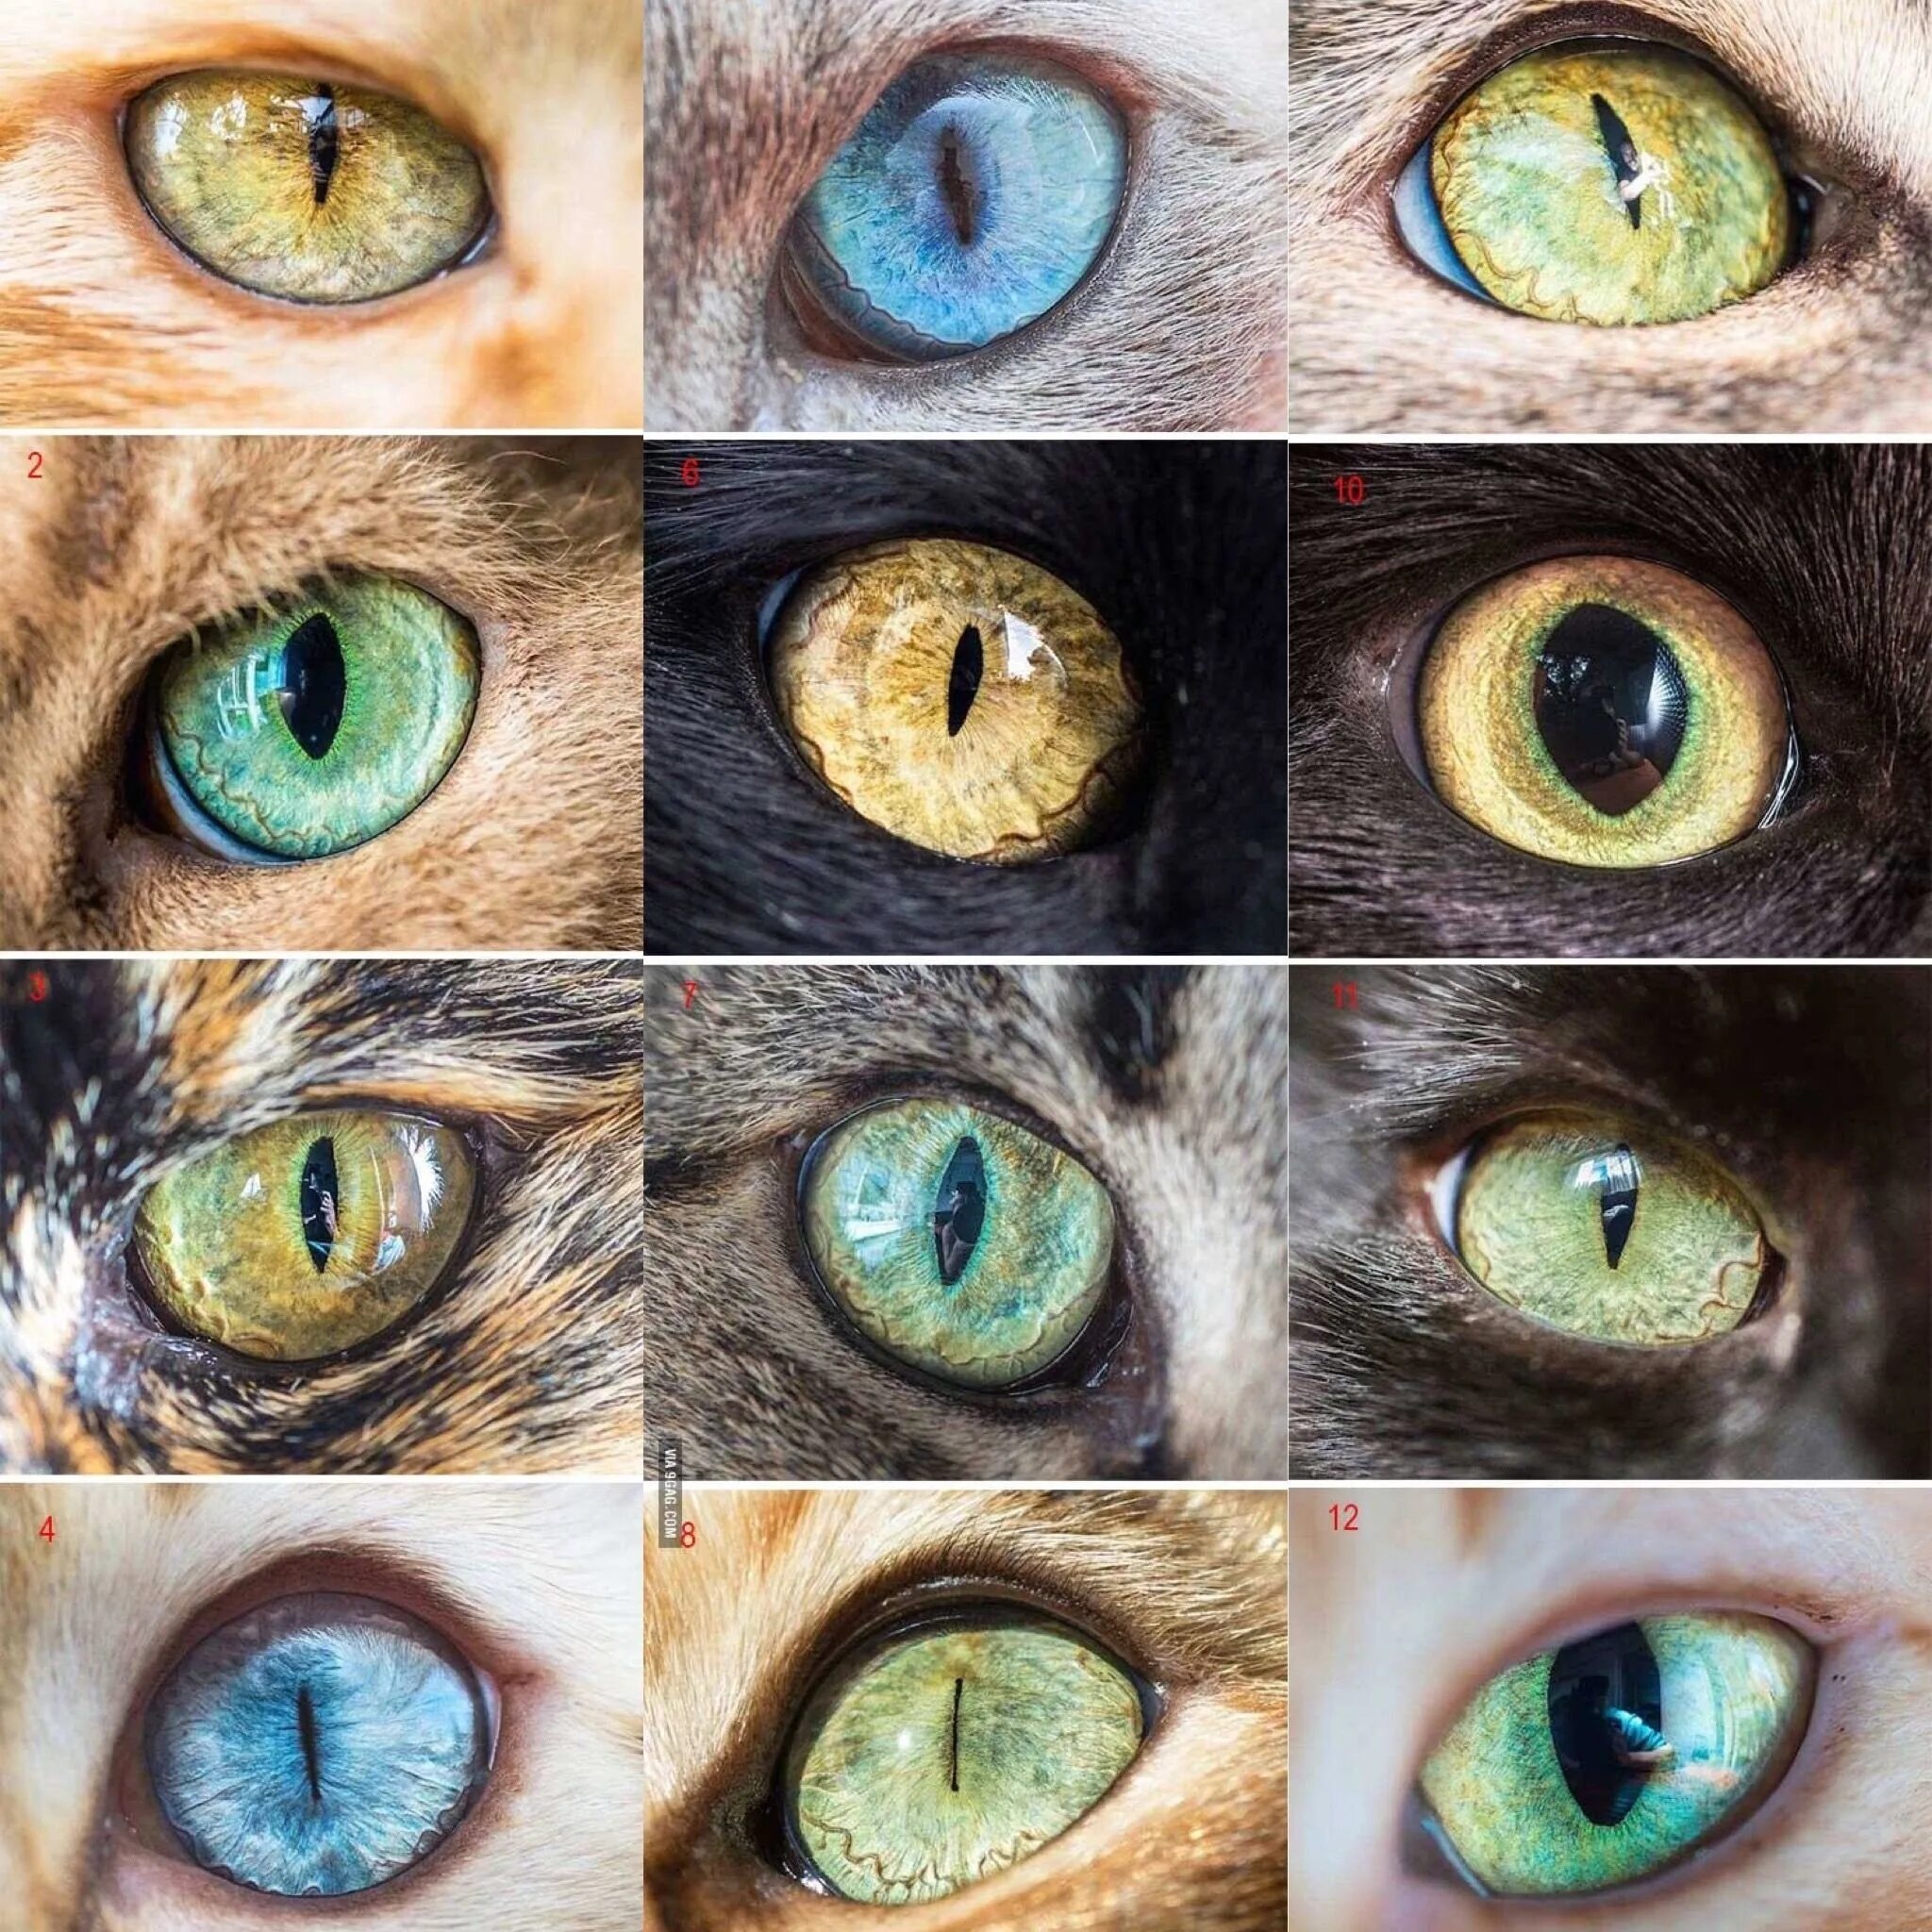 Радужка кошки. Глаз кота референс. Кошачий глаз. Необычные глаза животных. Зрачок кошки.